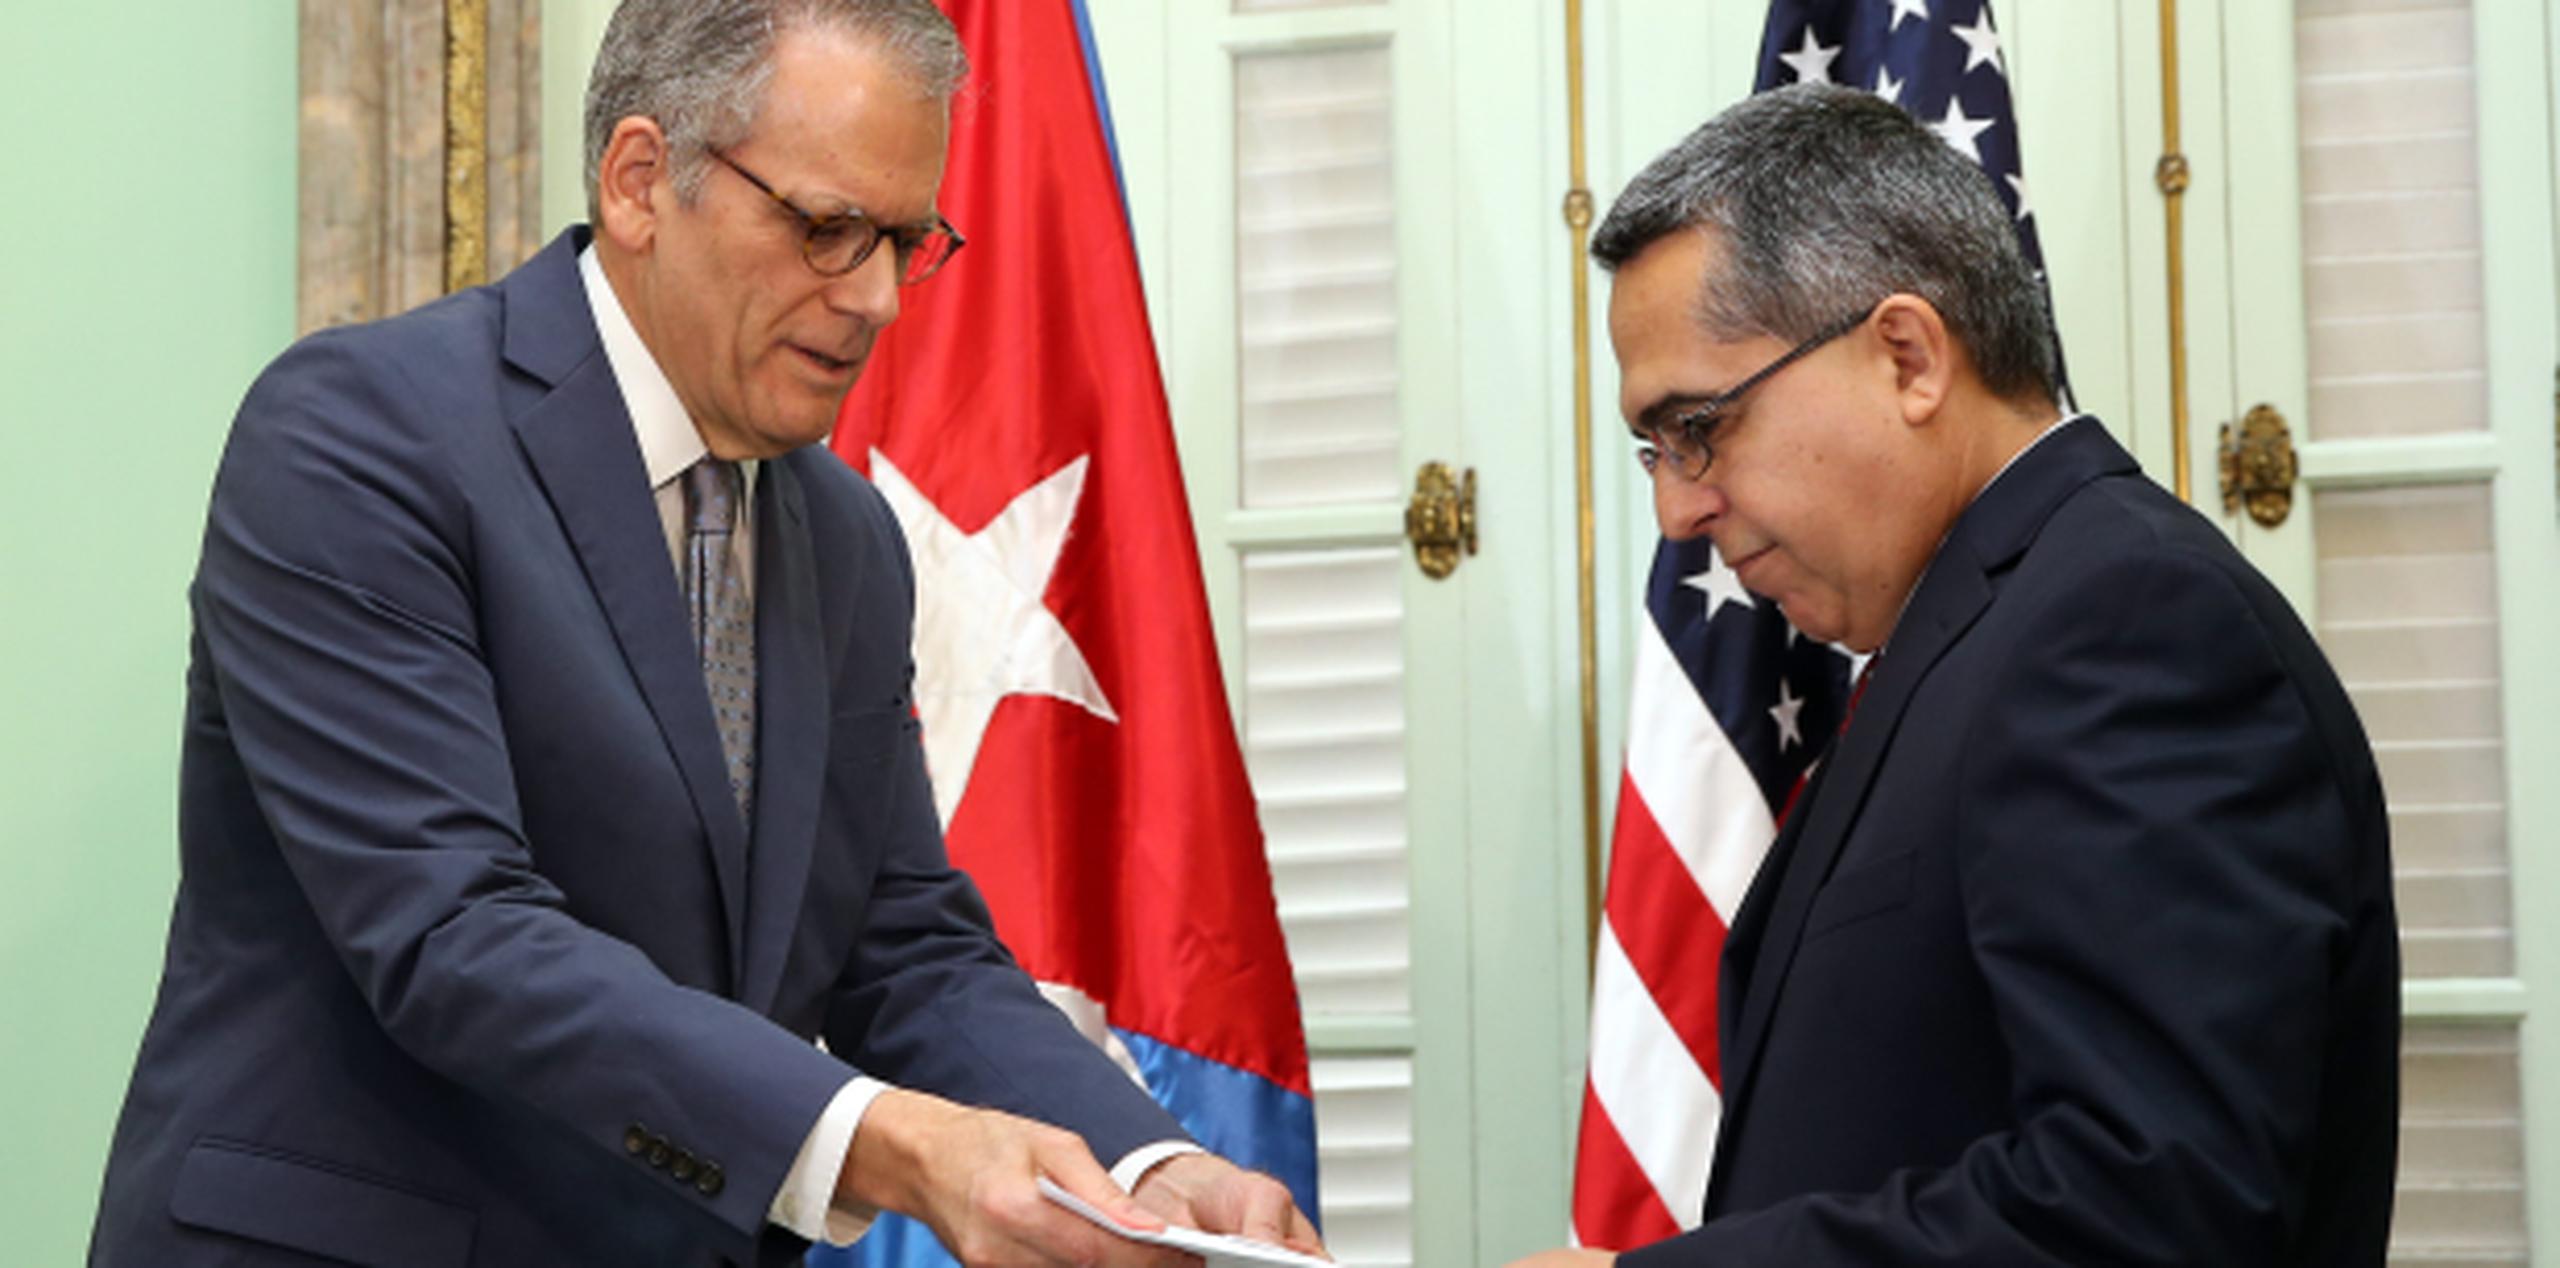 El ministro interino de Relaciones Exteriores de Cuba, Marcelino Medin entrega documentos al jefe de la Sección de Intereses de Estados Unidos en La Habana, Jeffrey DeLaurentis. (EFE)